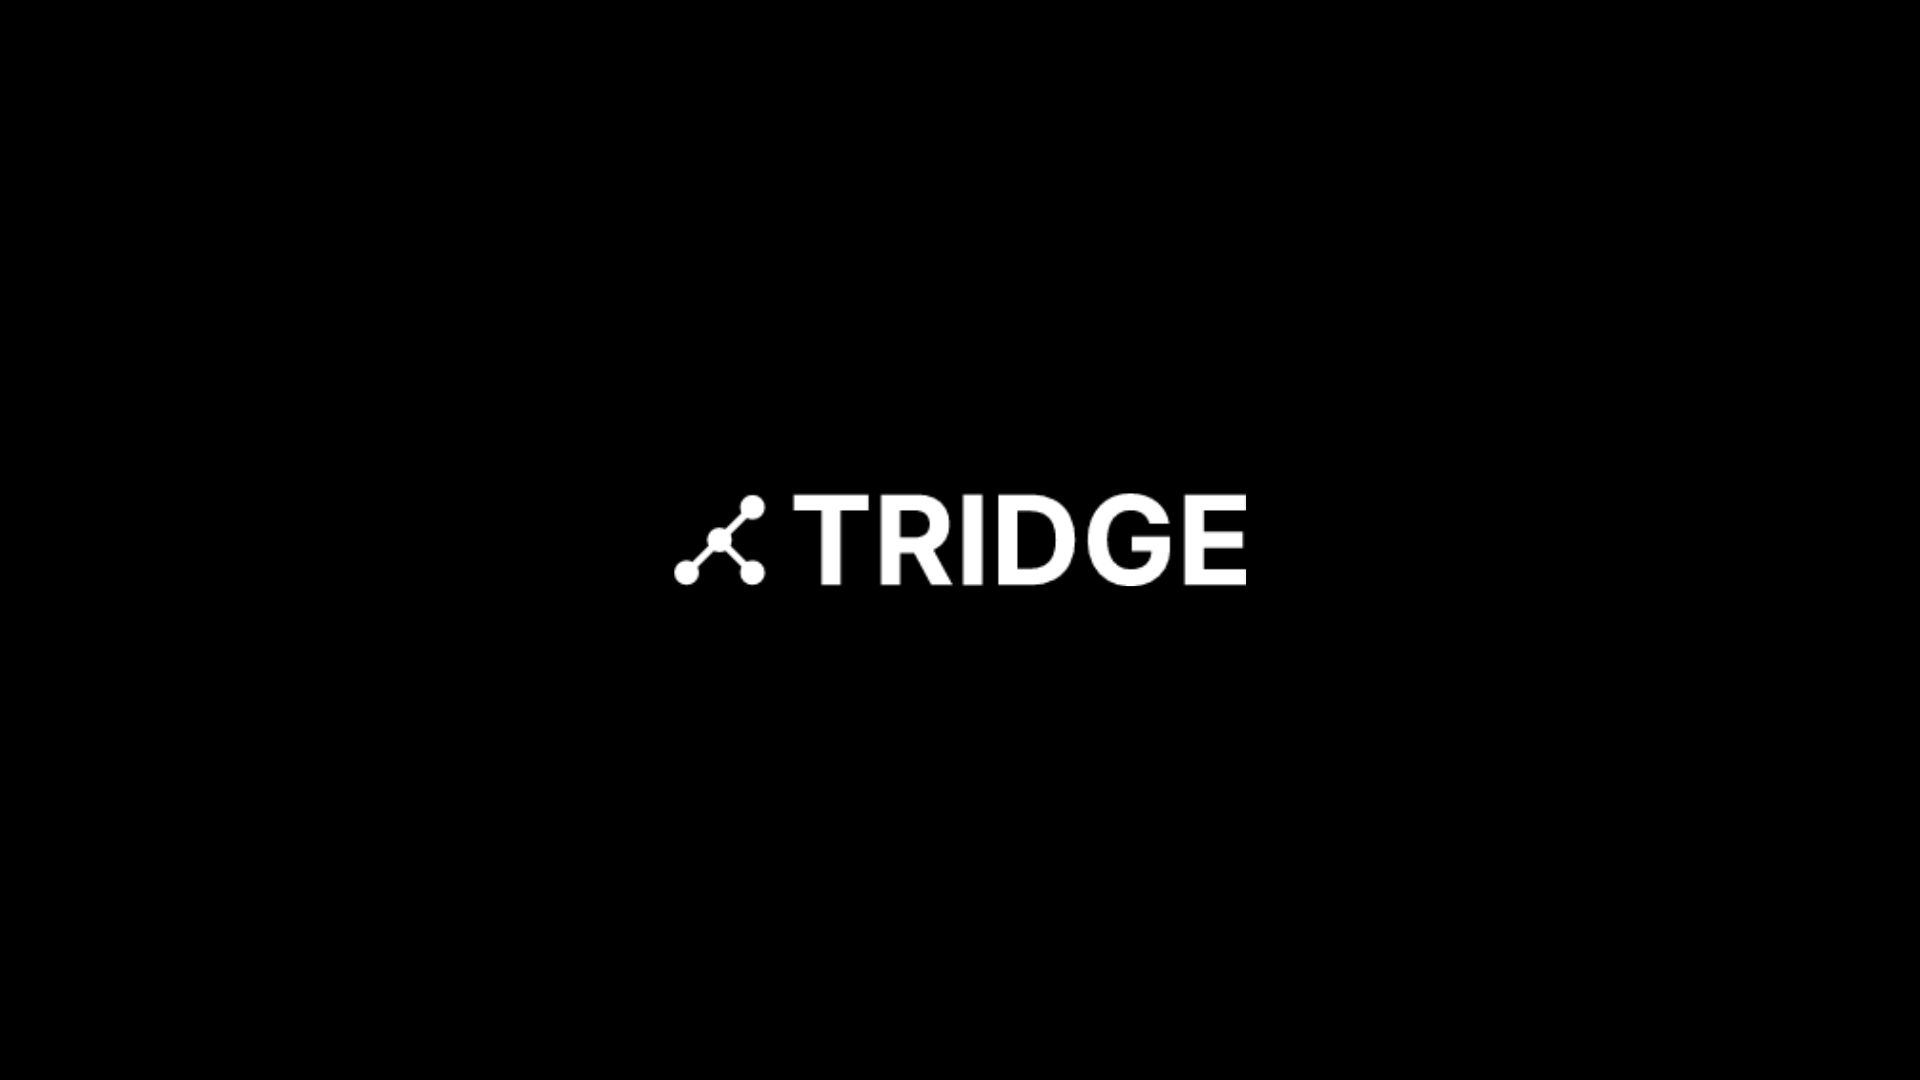 Tridge, 37 milyon dolar yatırım aldı